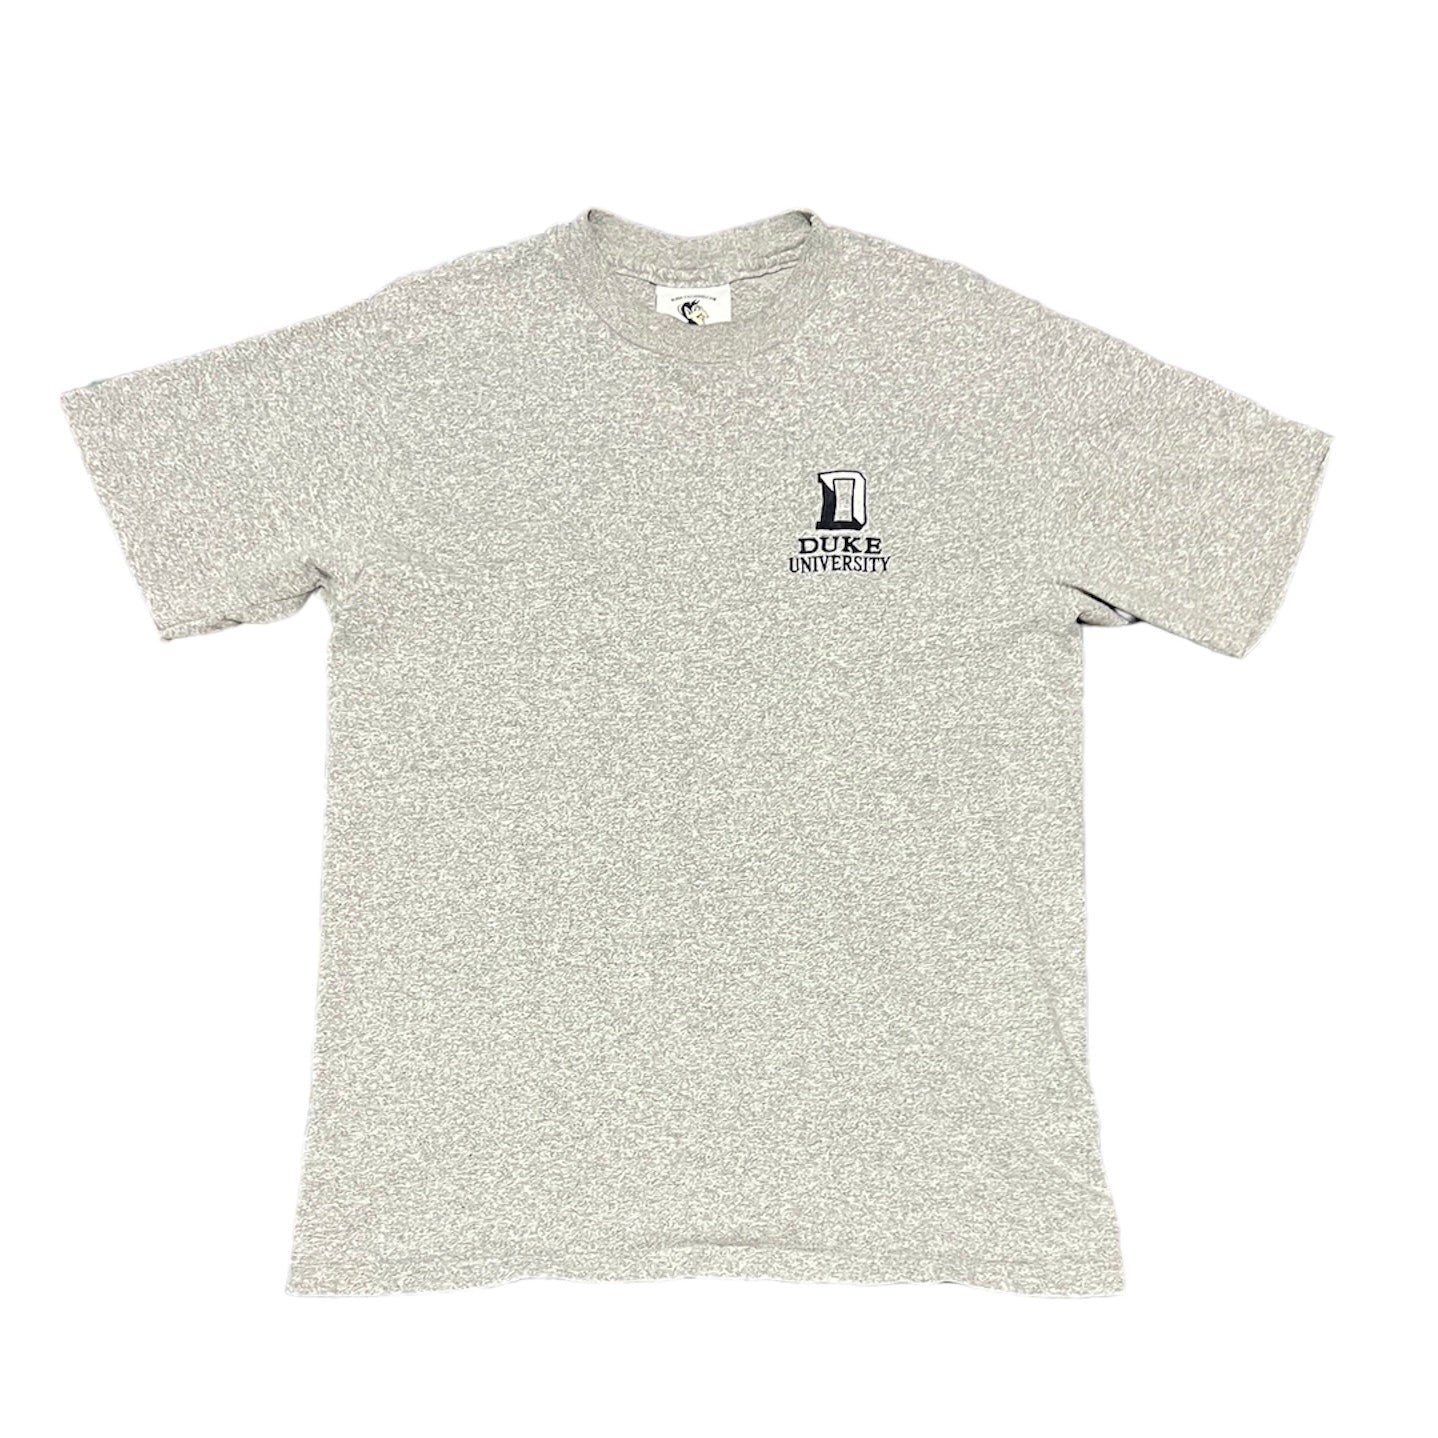 Duke University Embroidered T-Shirt Size Medium